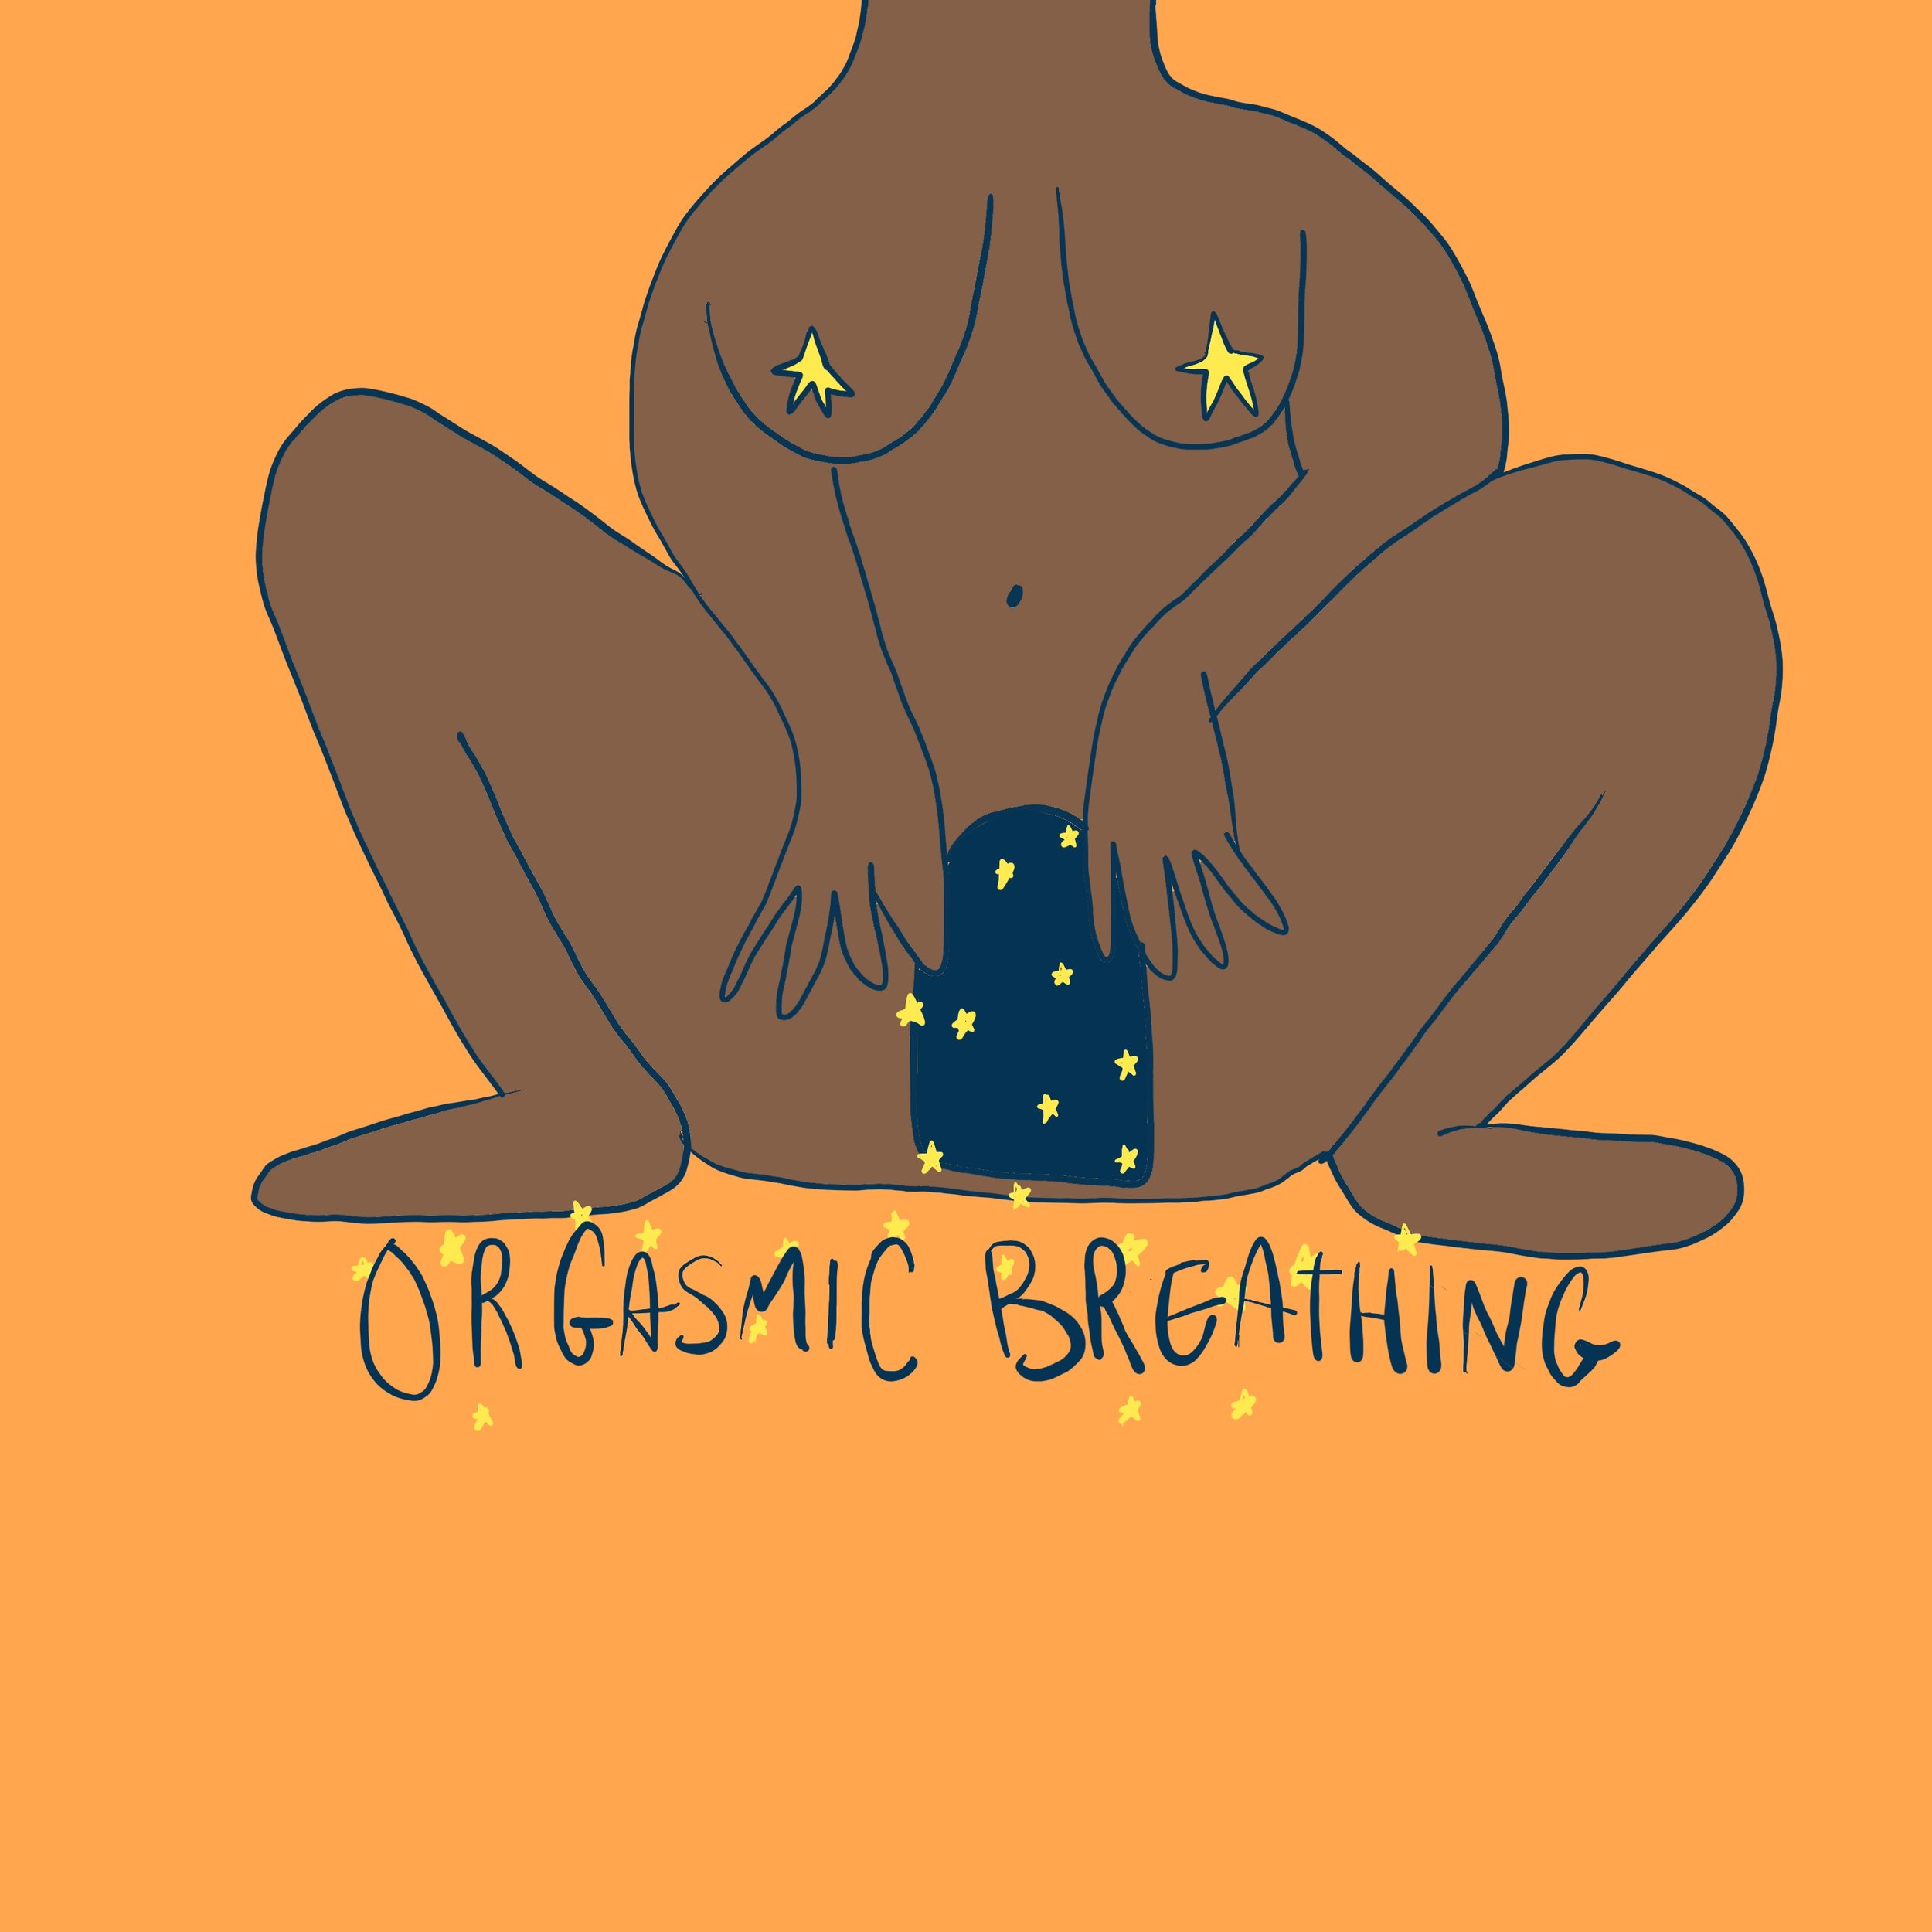 Orgasmic Breathing — The Sex Ed image image